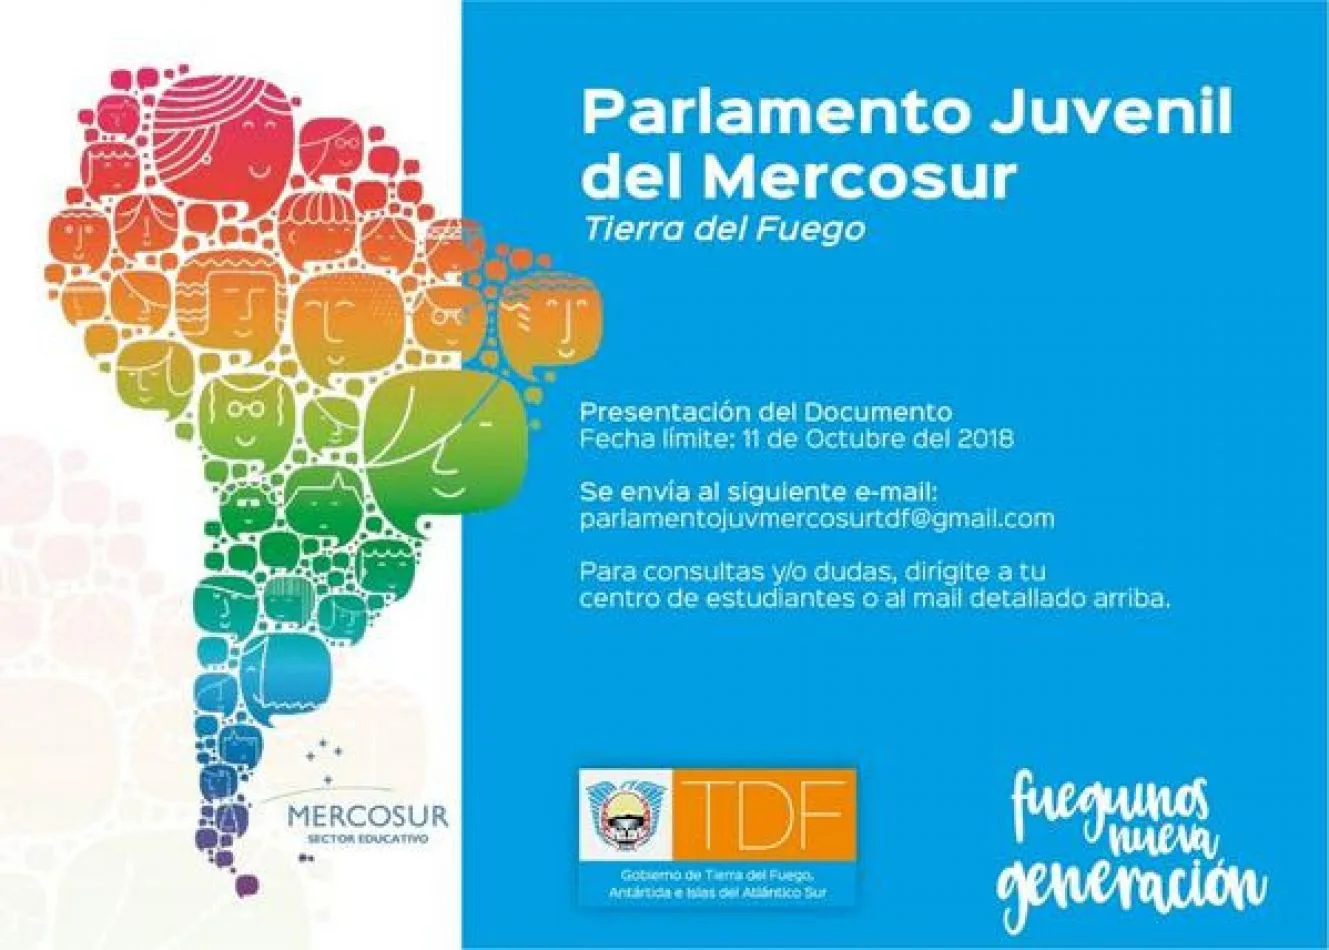 Nueva edición del Parlamento Juvenil del Mercosur